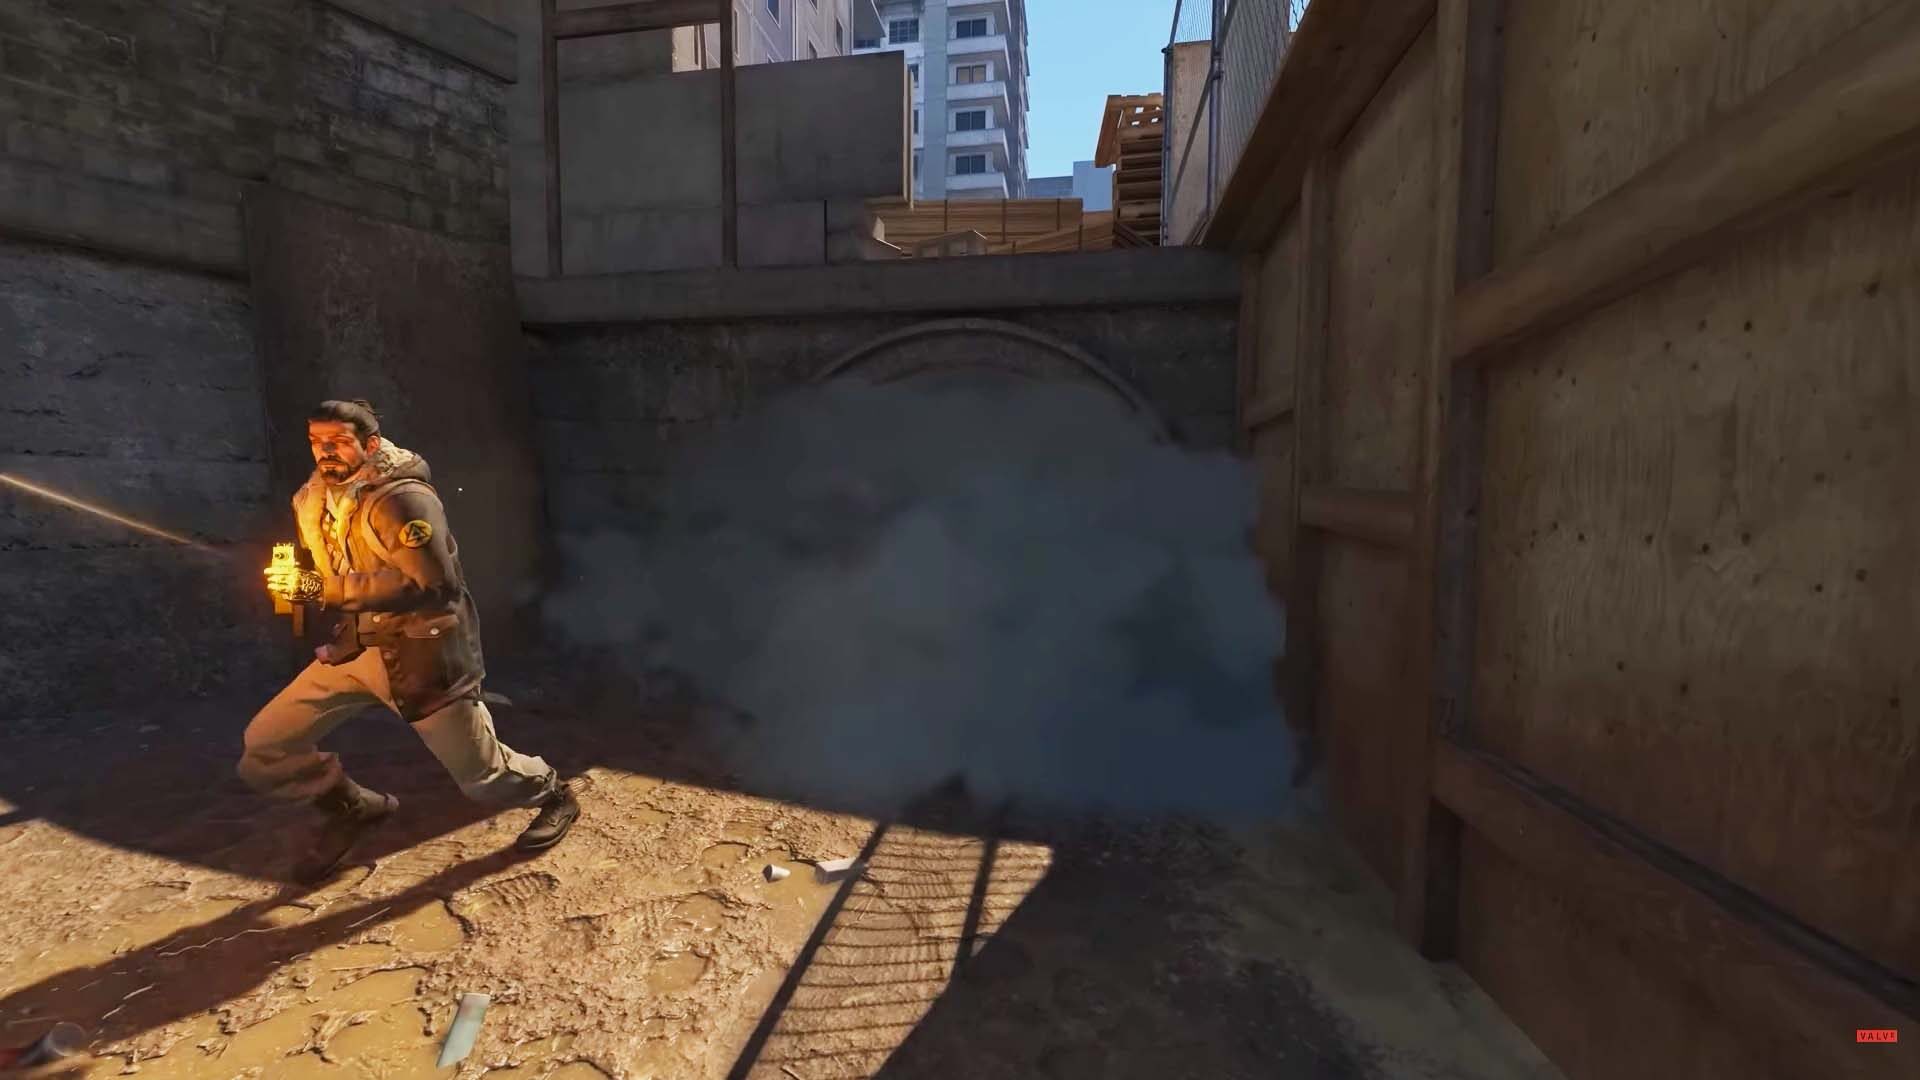 Counter strike 2 update, new gameplay smokes